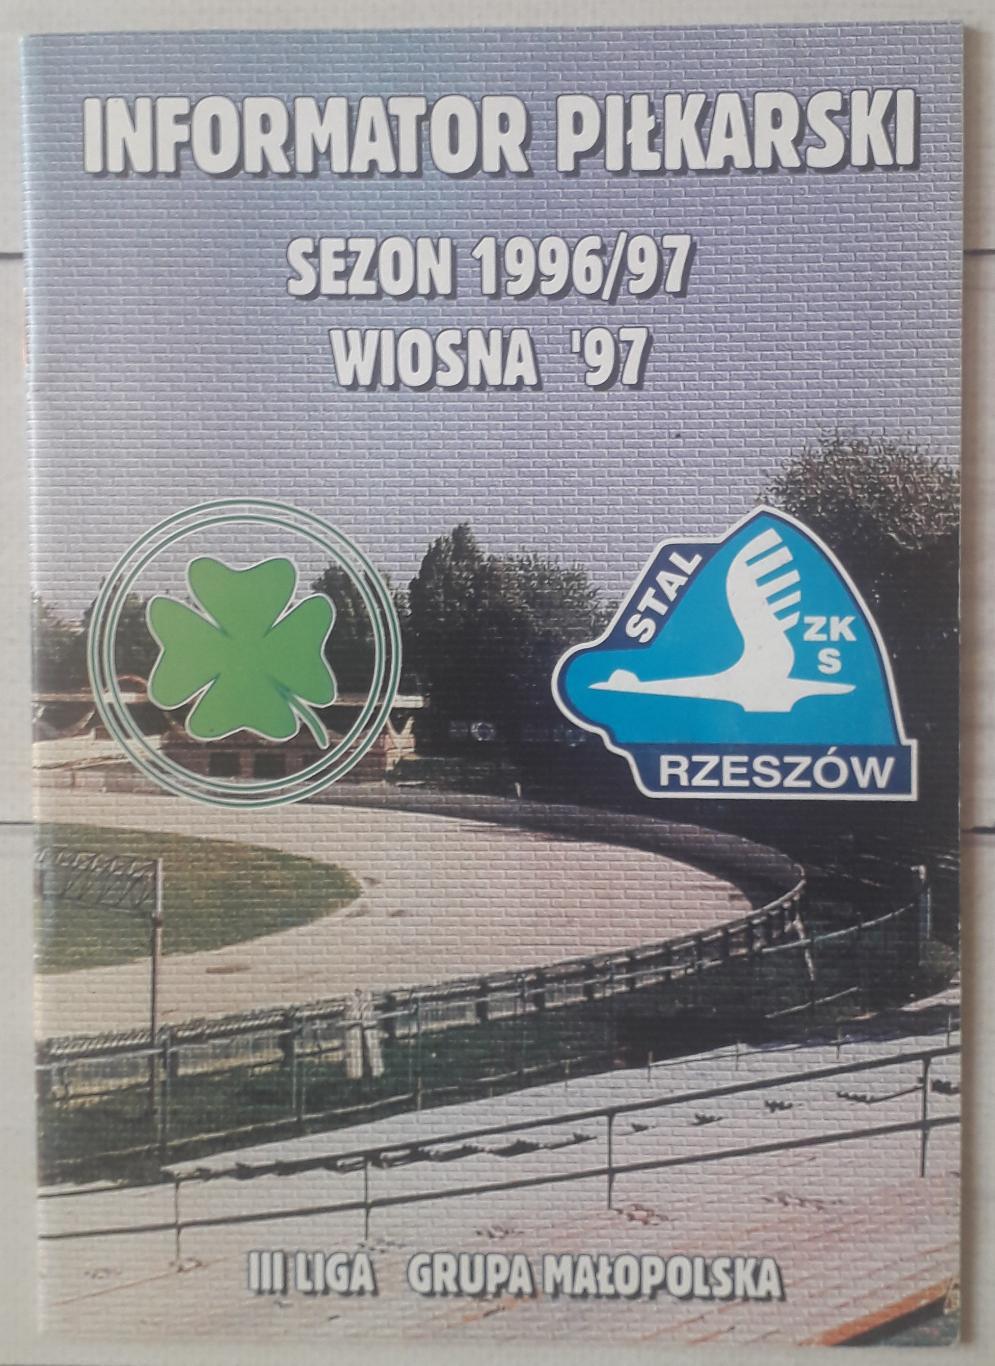 Сталь Жешув Польща. Сезон 1996-1997. Весна